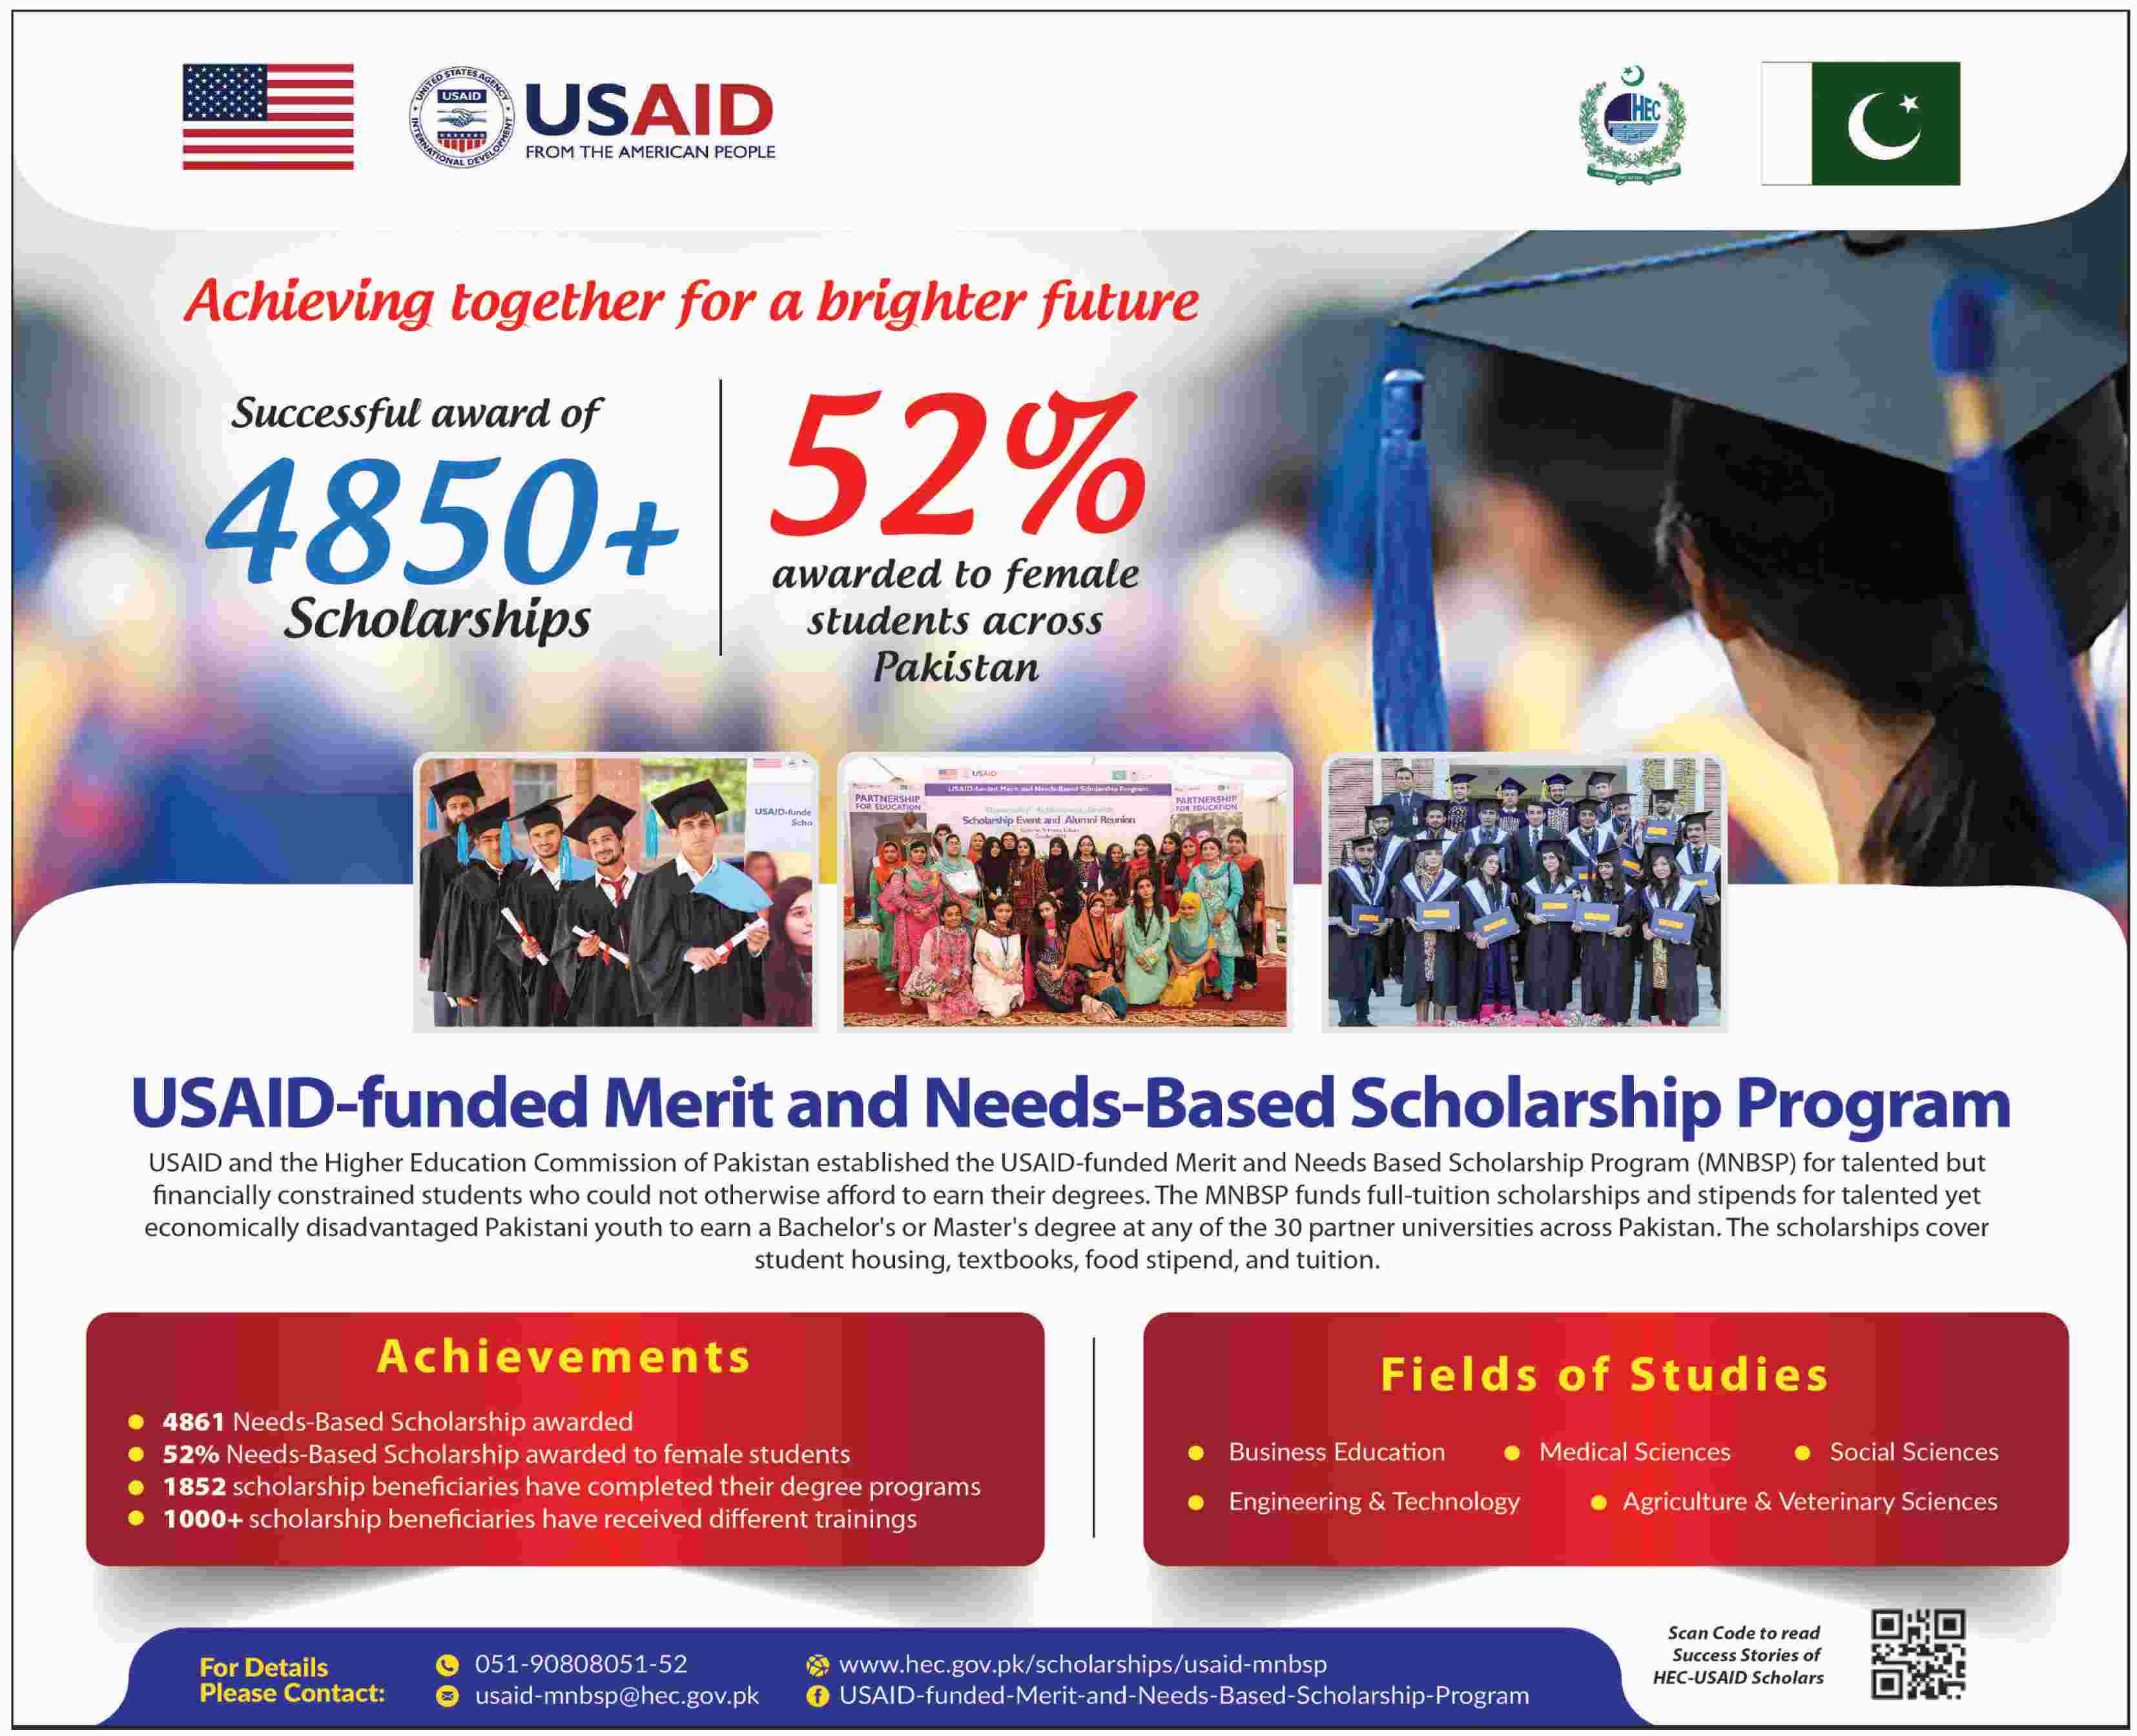 USAID-funded Merit and Needs-Based Scholarship Program